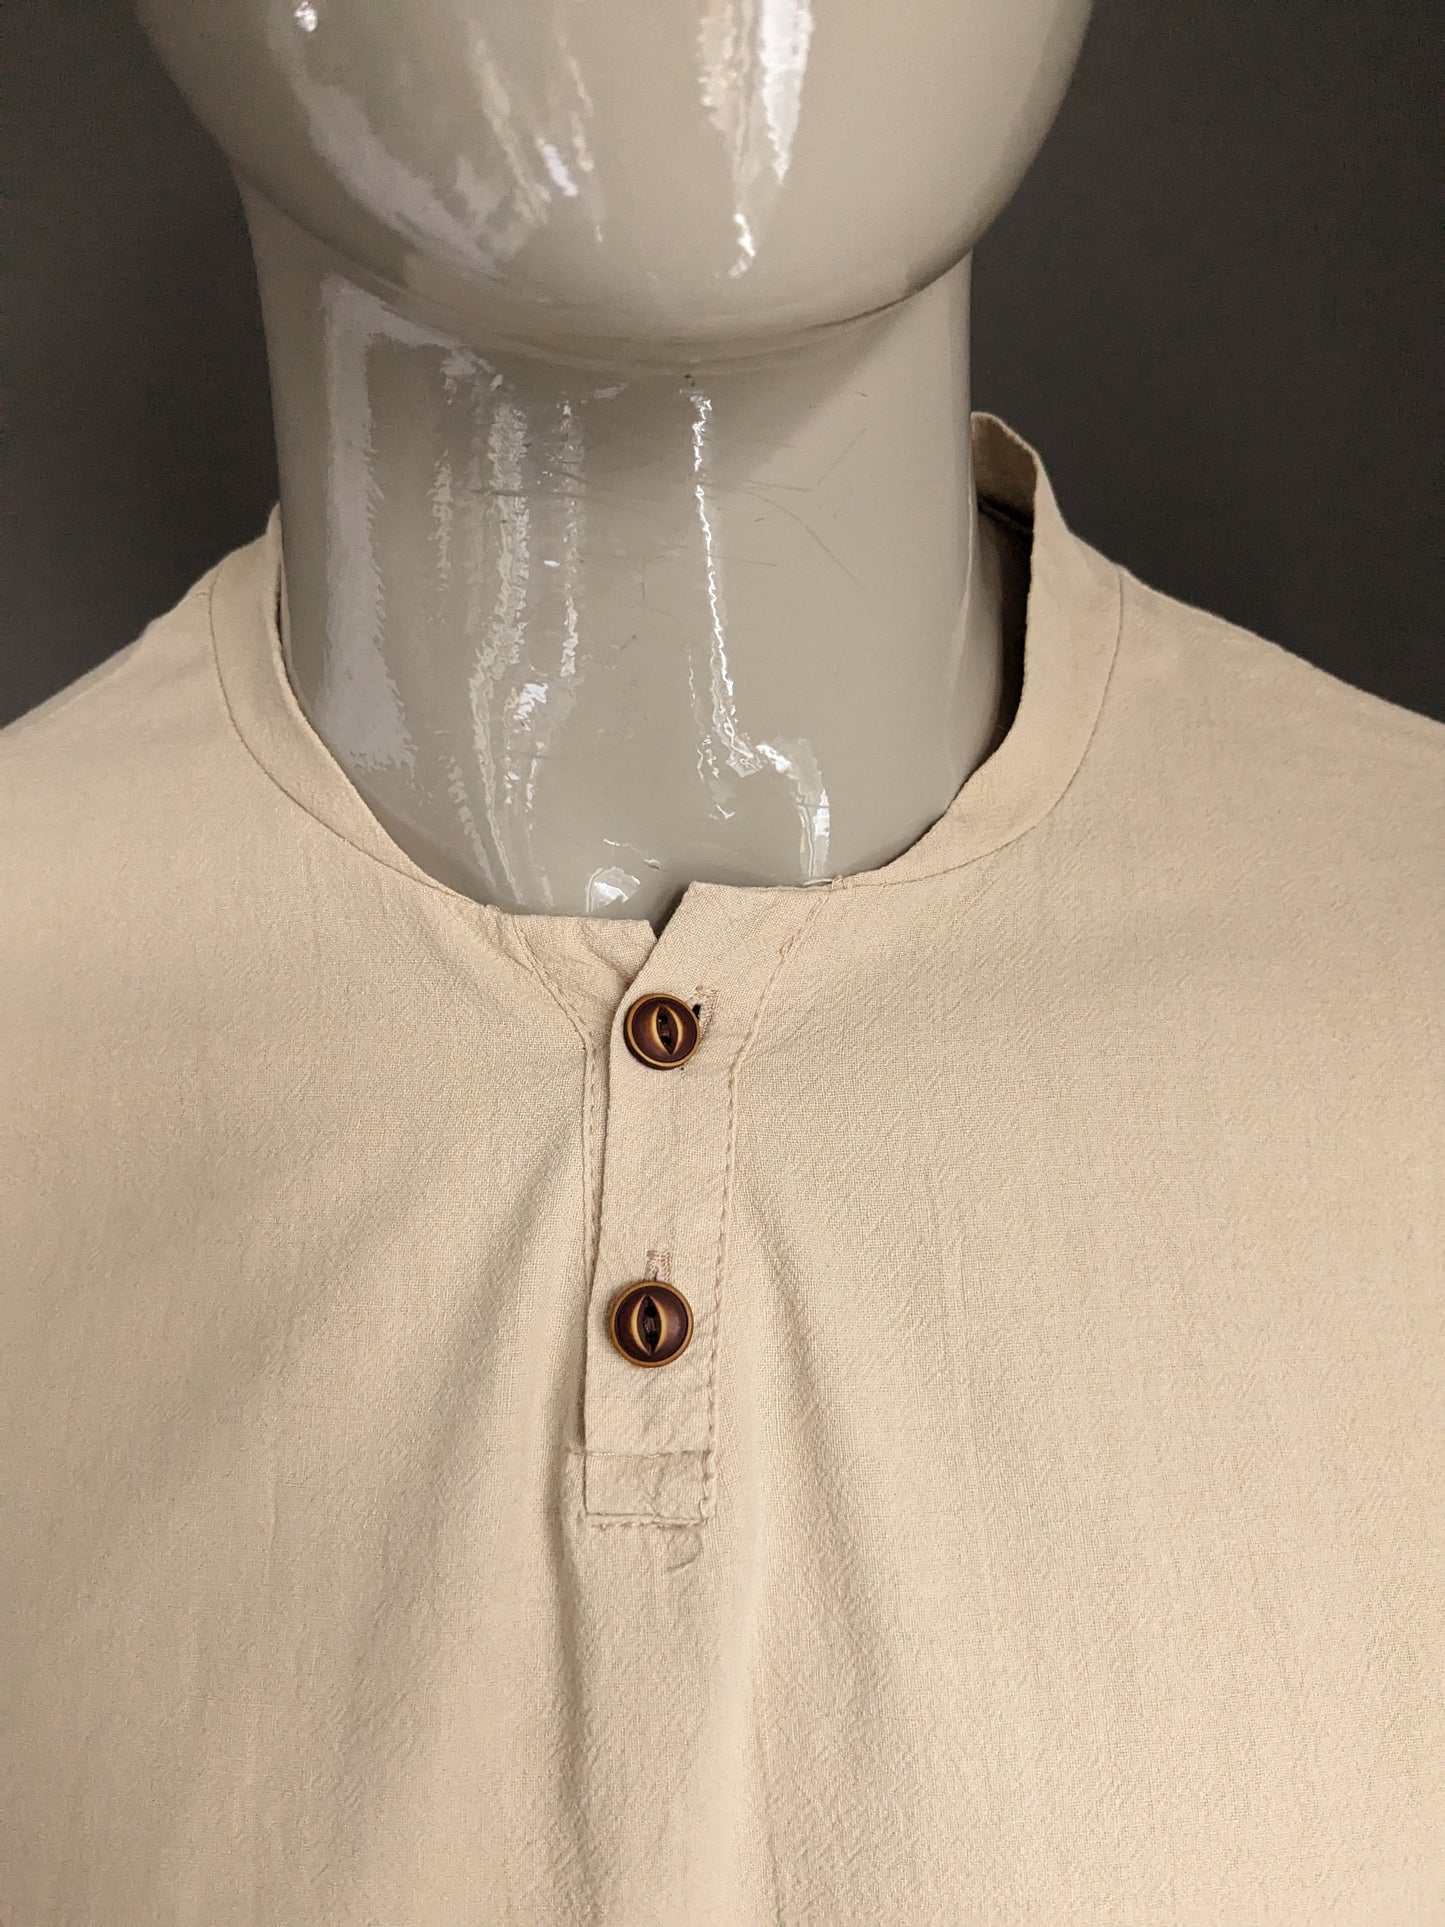 Chemise / polo vintage avec collier et boutons surélevés. Beige. Taille L.